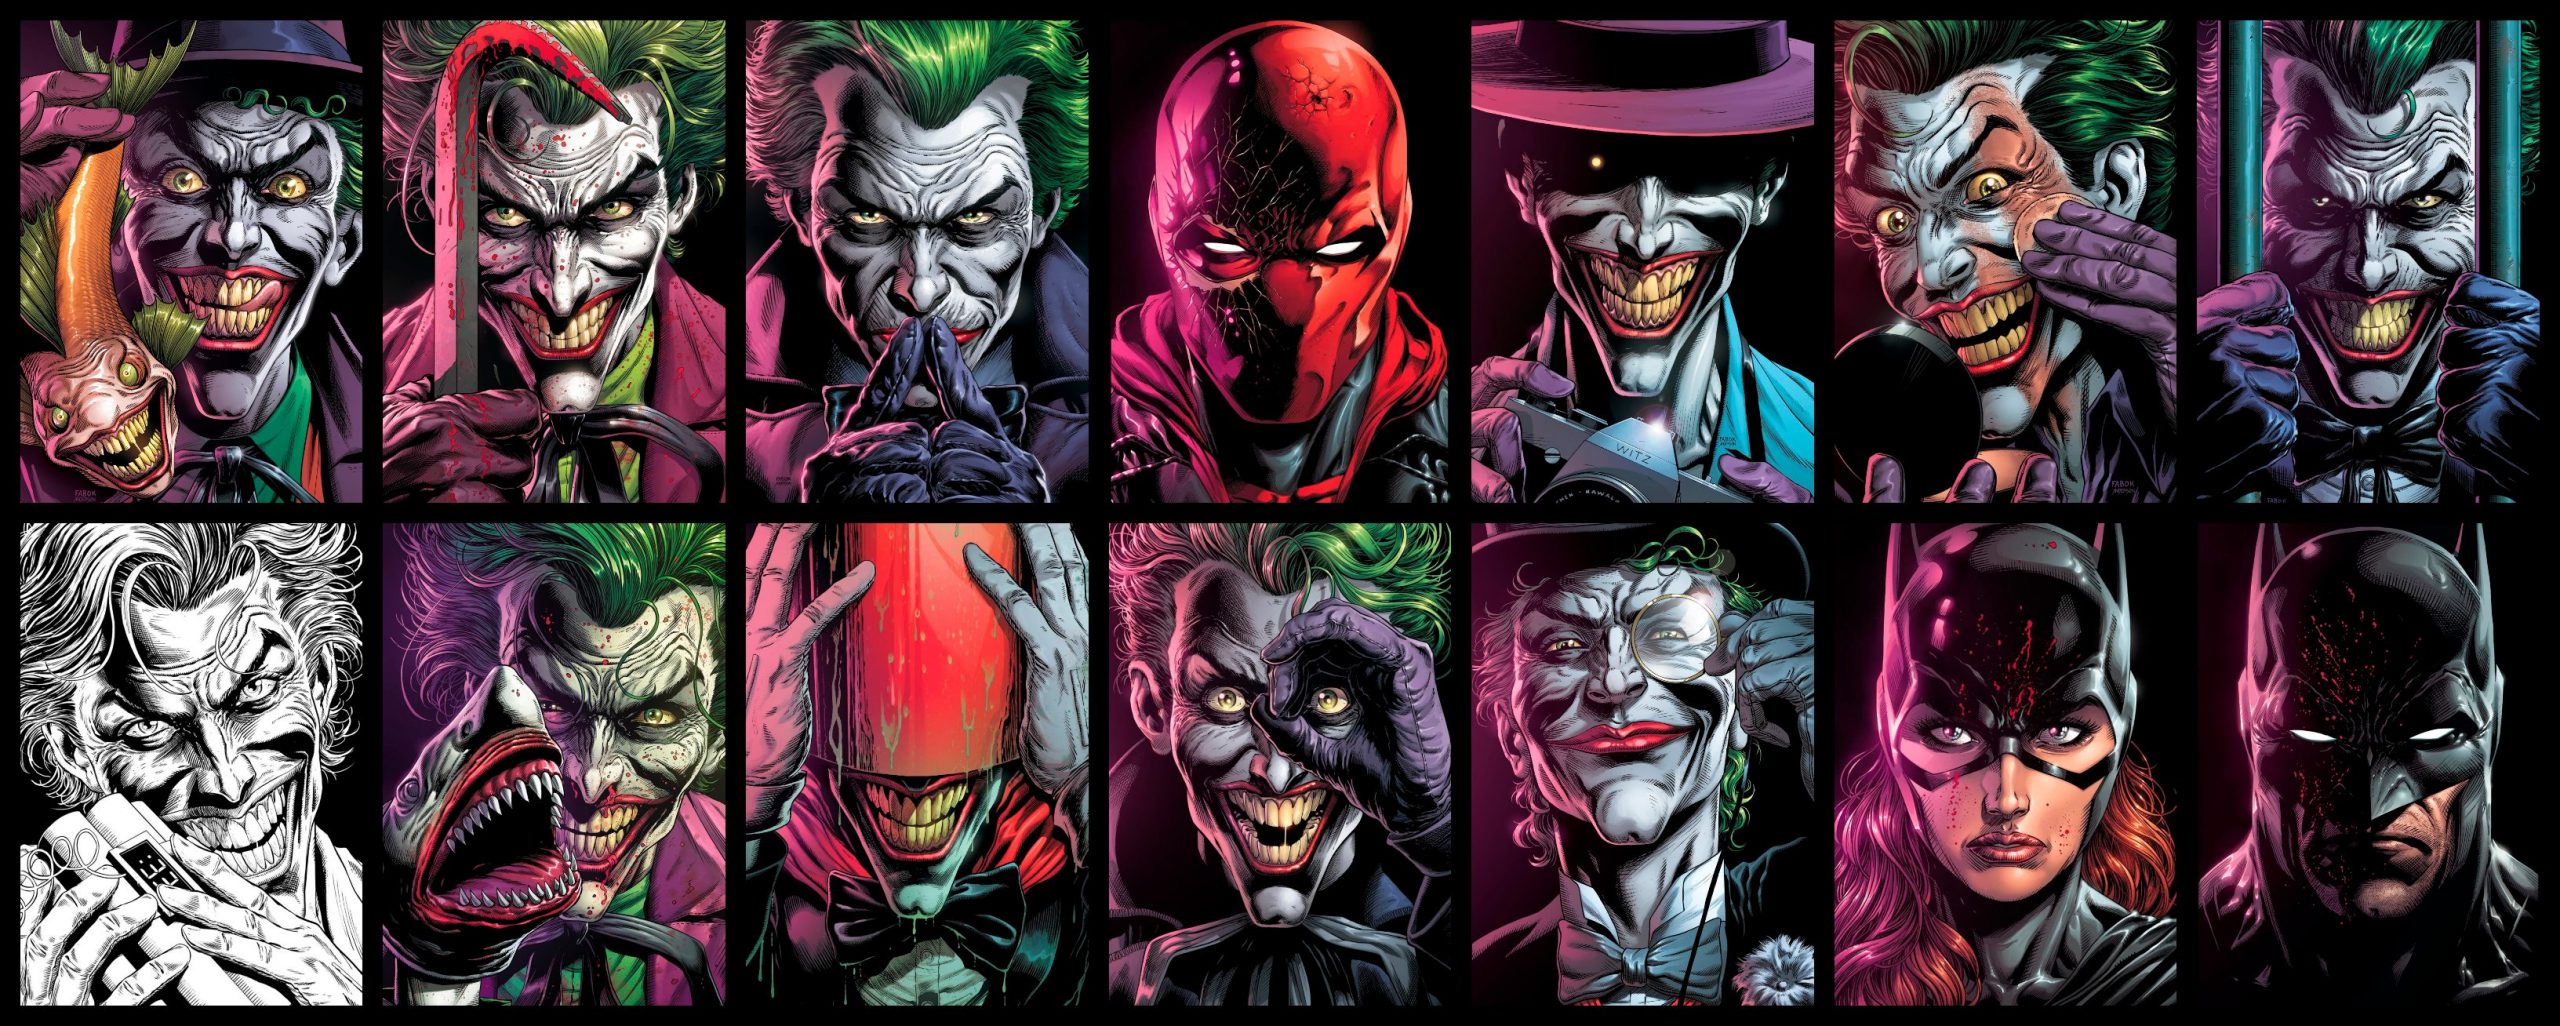 Batman: Tres Jokers – Edición Integral PREVENTA 26 DE ABRIL ⋆ tajmahalcomics